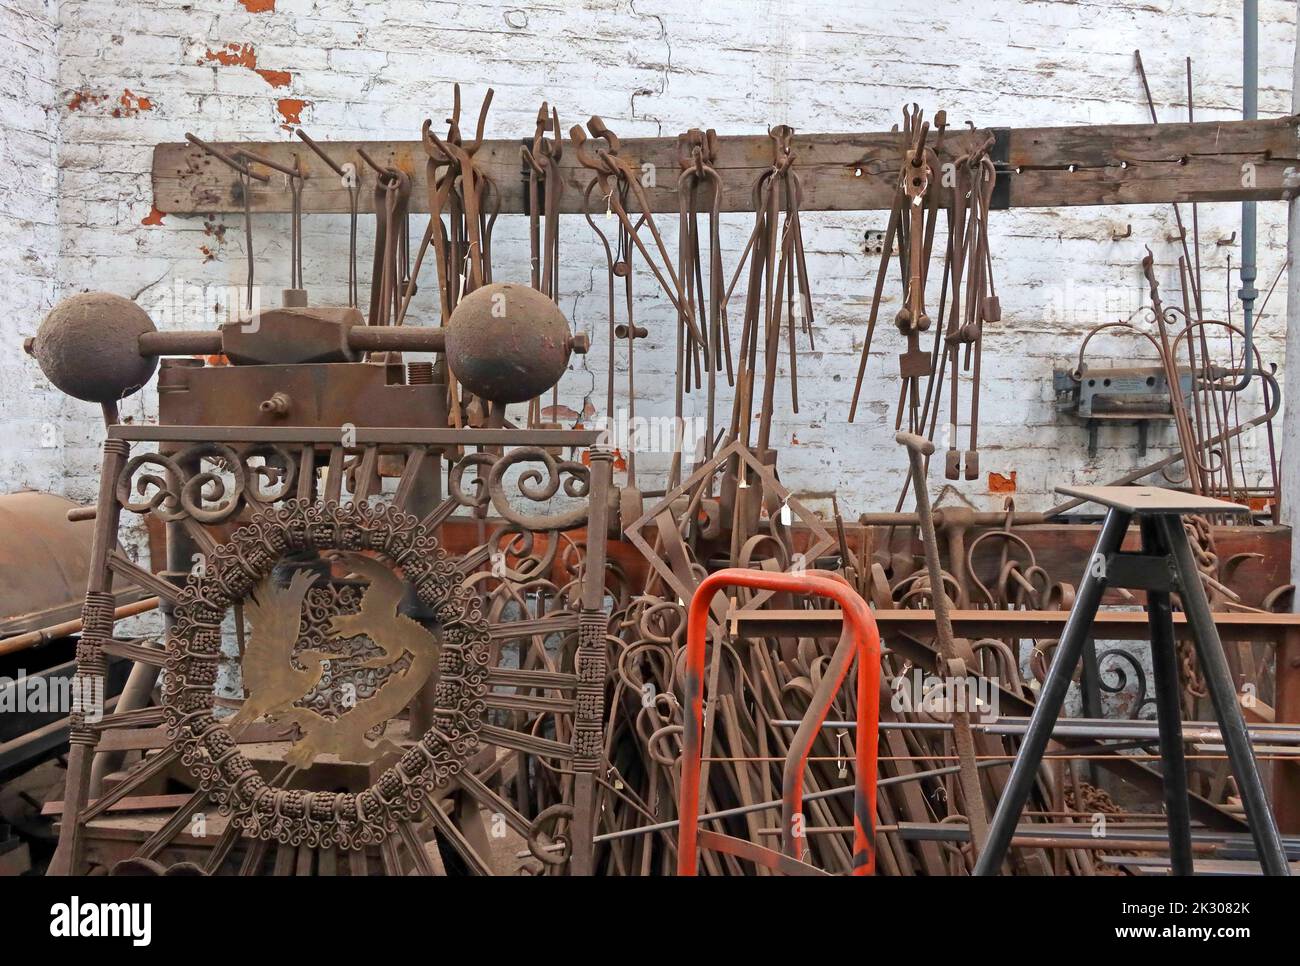 Intérieur de la boutique de forge, forge, fer à sonner, coulée, façonnage, Canalside Works, Cheshire, Angleterre, Royaume-Uni Banque D'Images